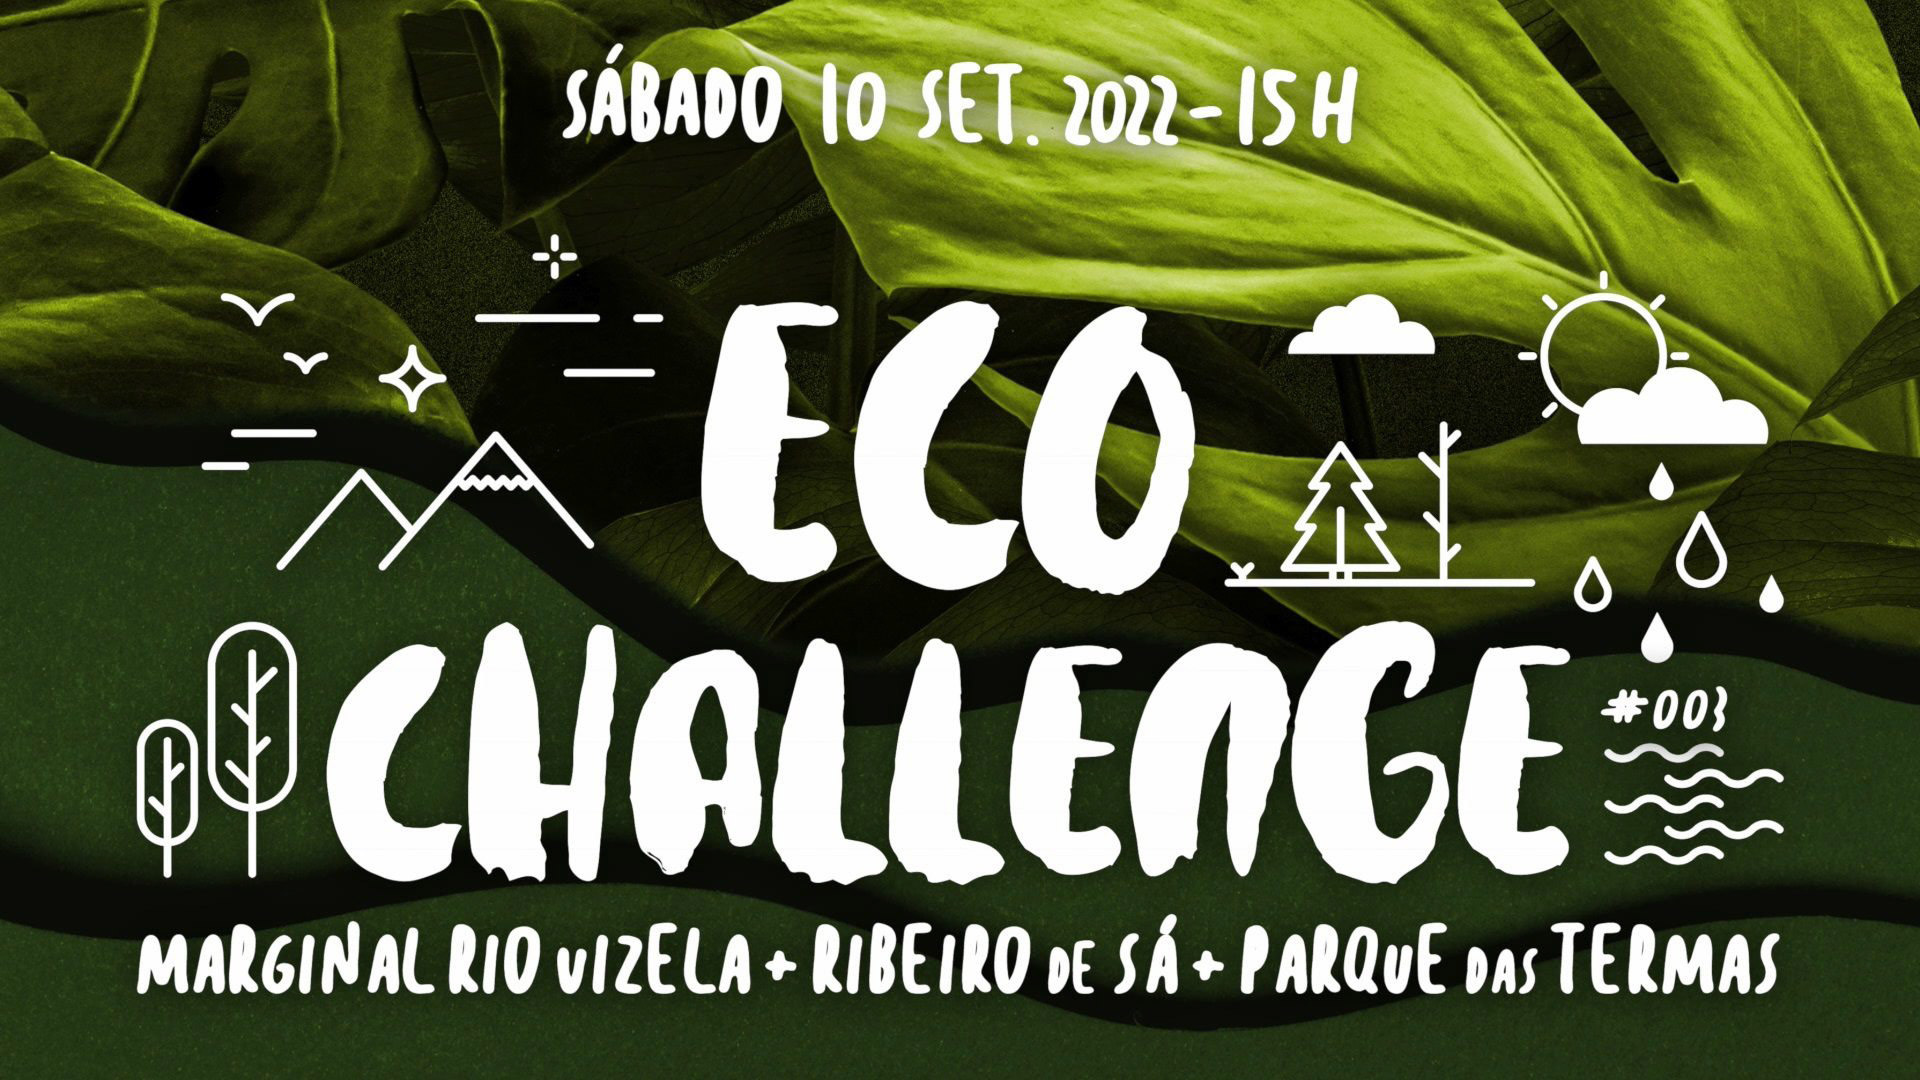 Abertas as inscrições para Eco Challenge 2022, até ao dia 31 de agosto